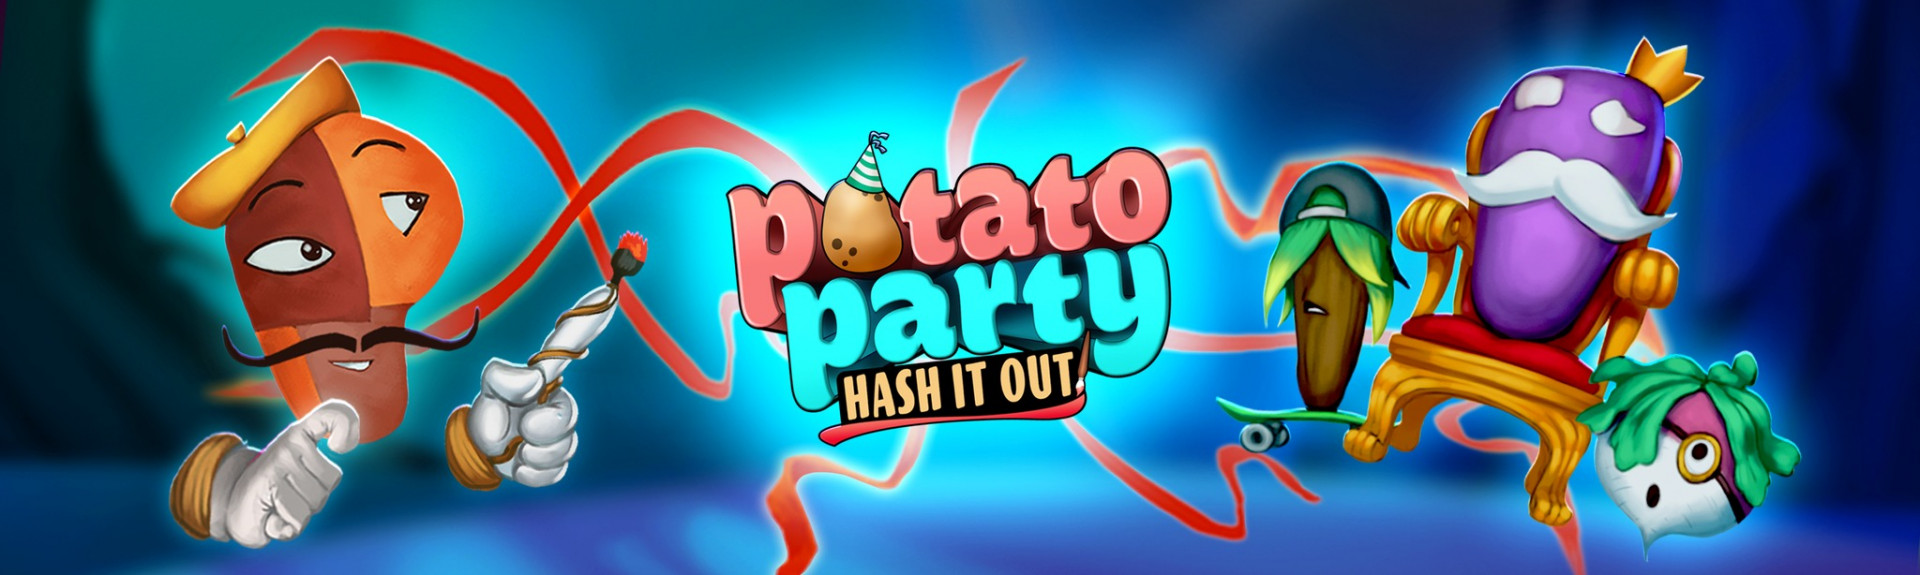 Potato Party: Hash It Out